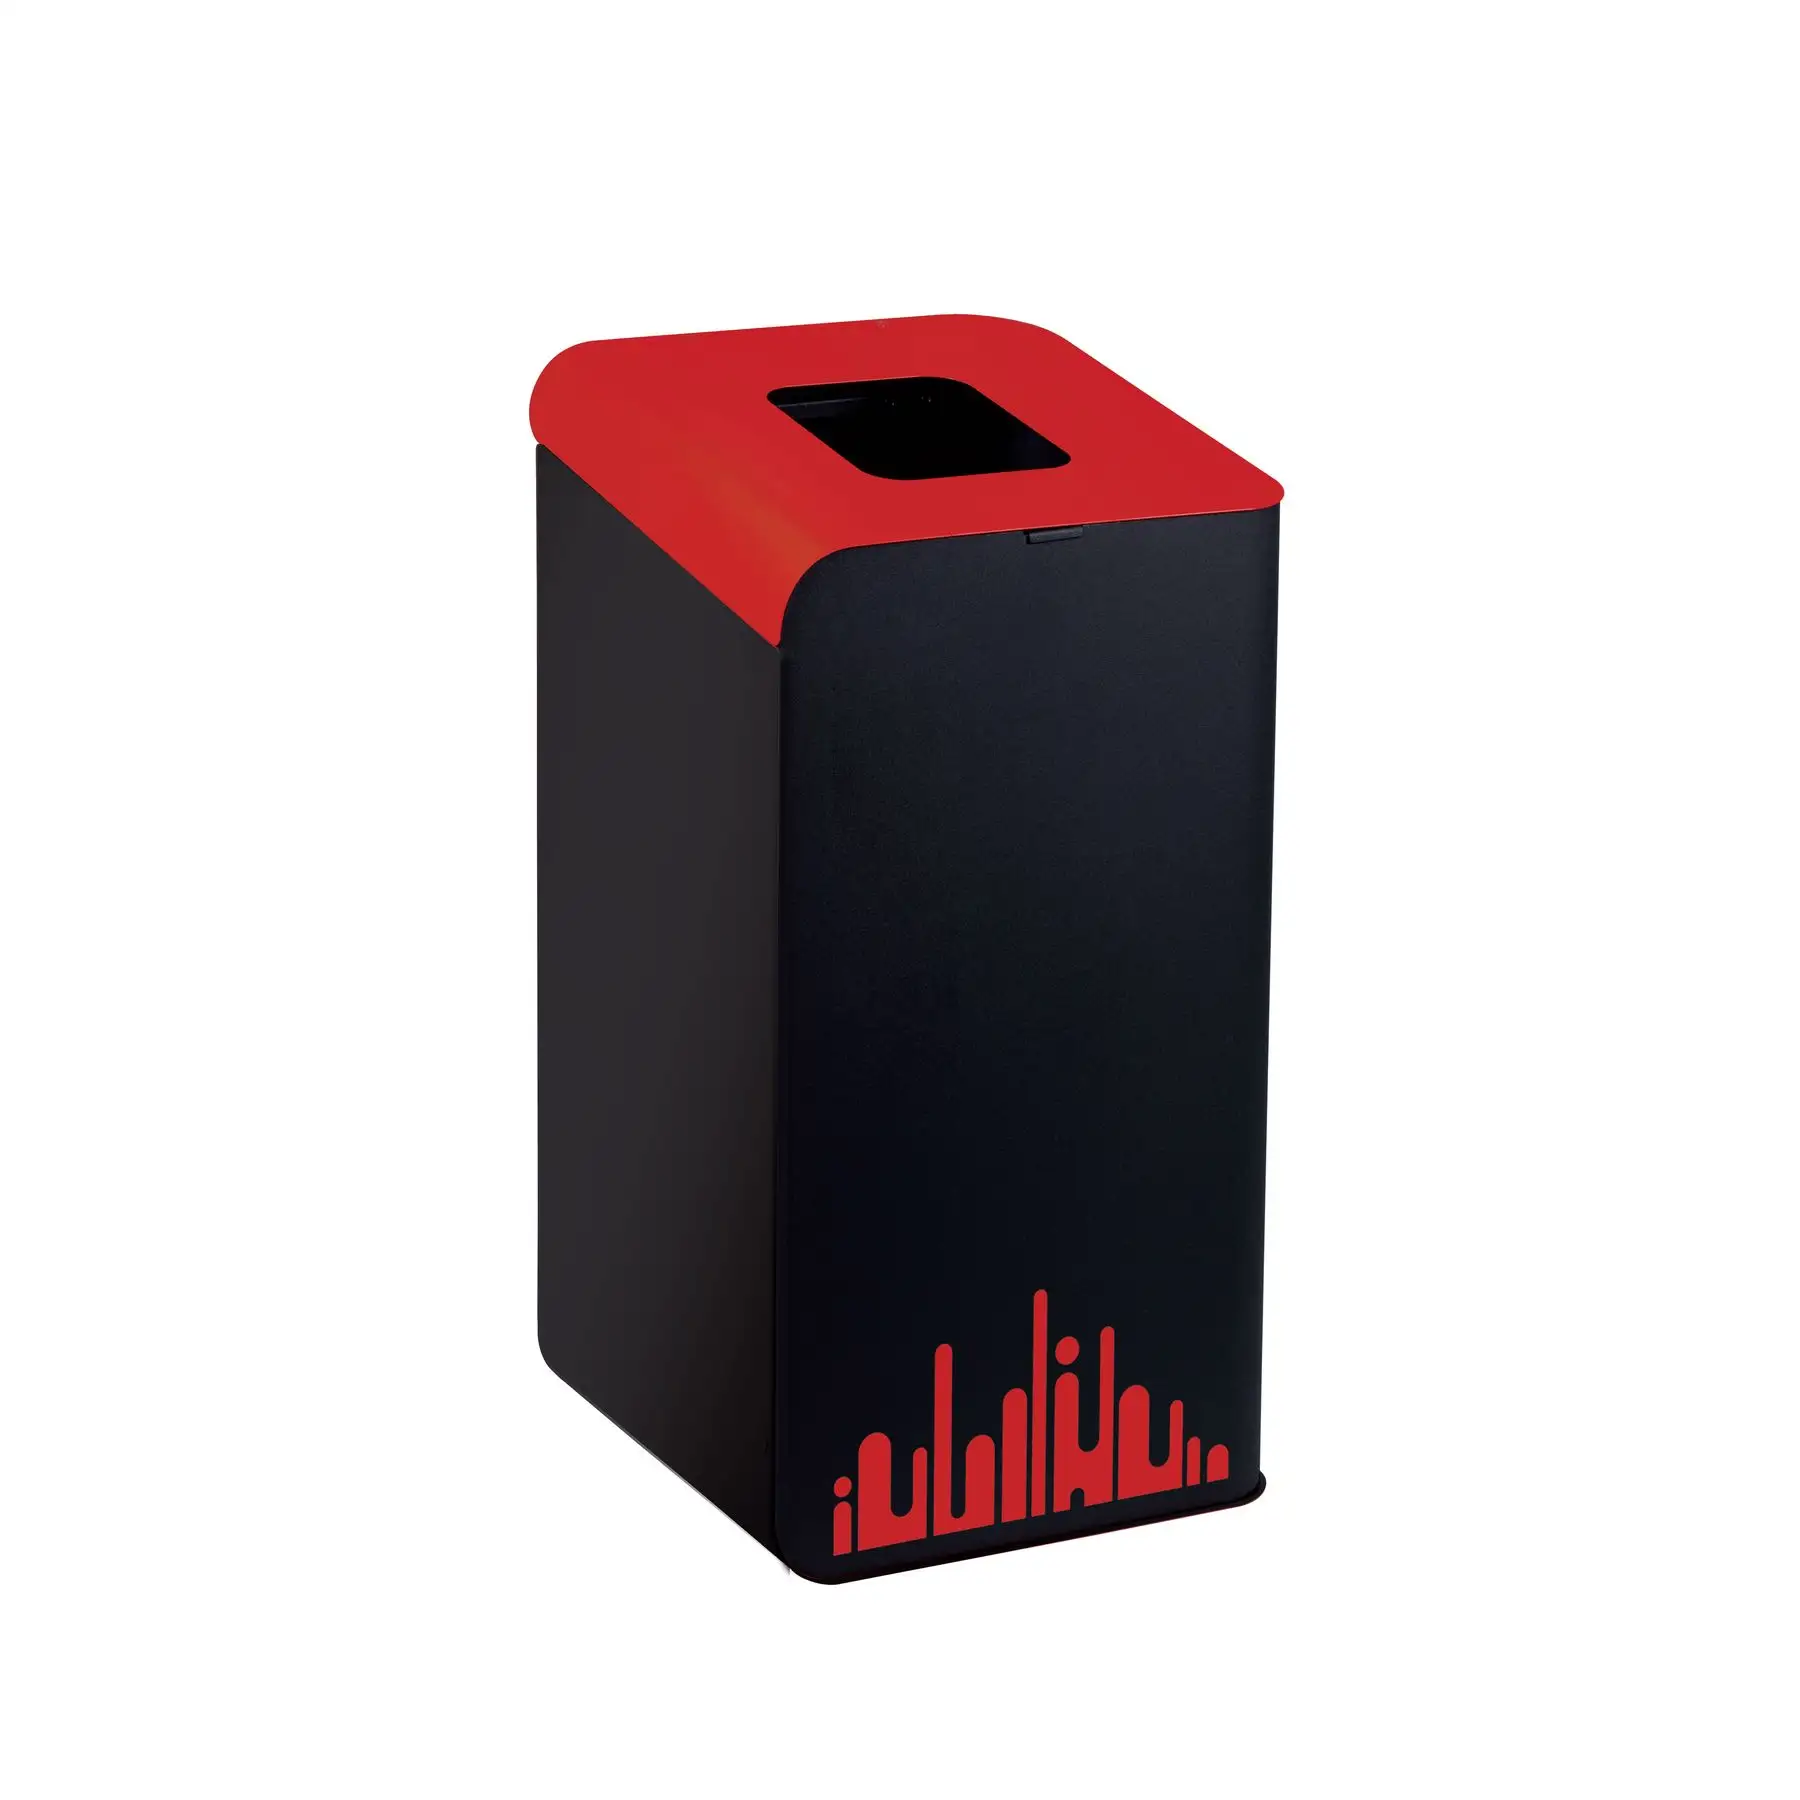 Cubo de reciclaje inspirado en Rubik Evo Urban-Acero elegante con recubrimiento en polvo con pegatinas estéticas-Diseño de puerta superior fácil de usar